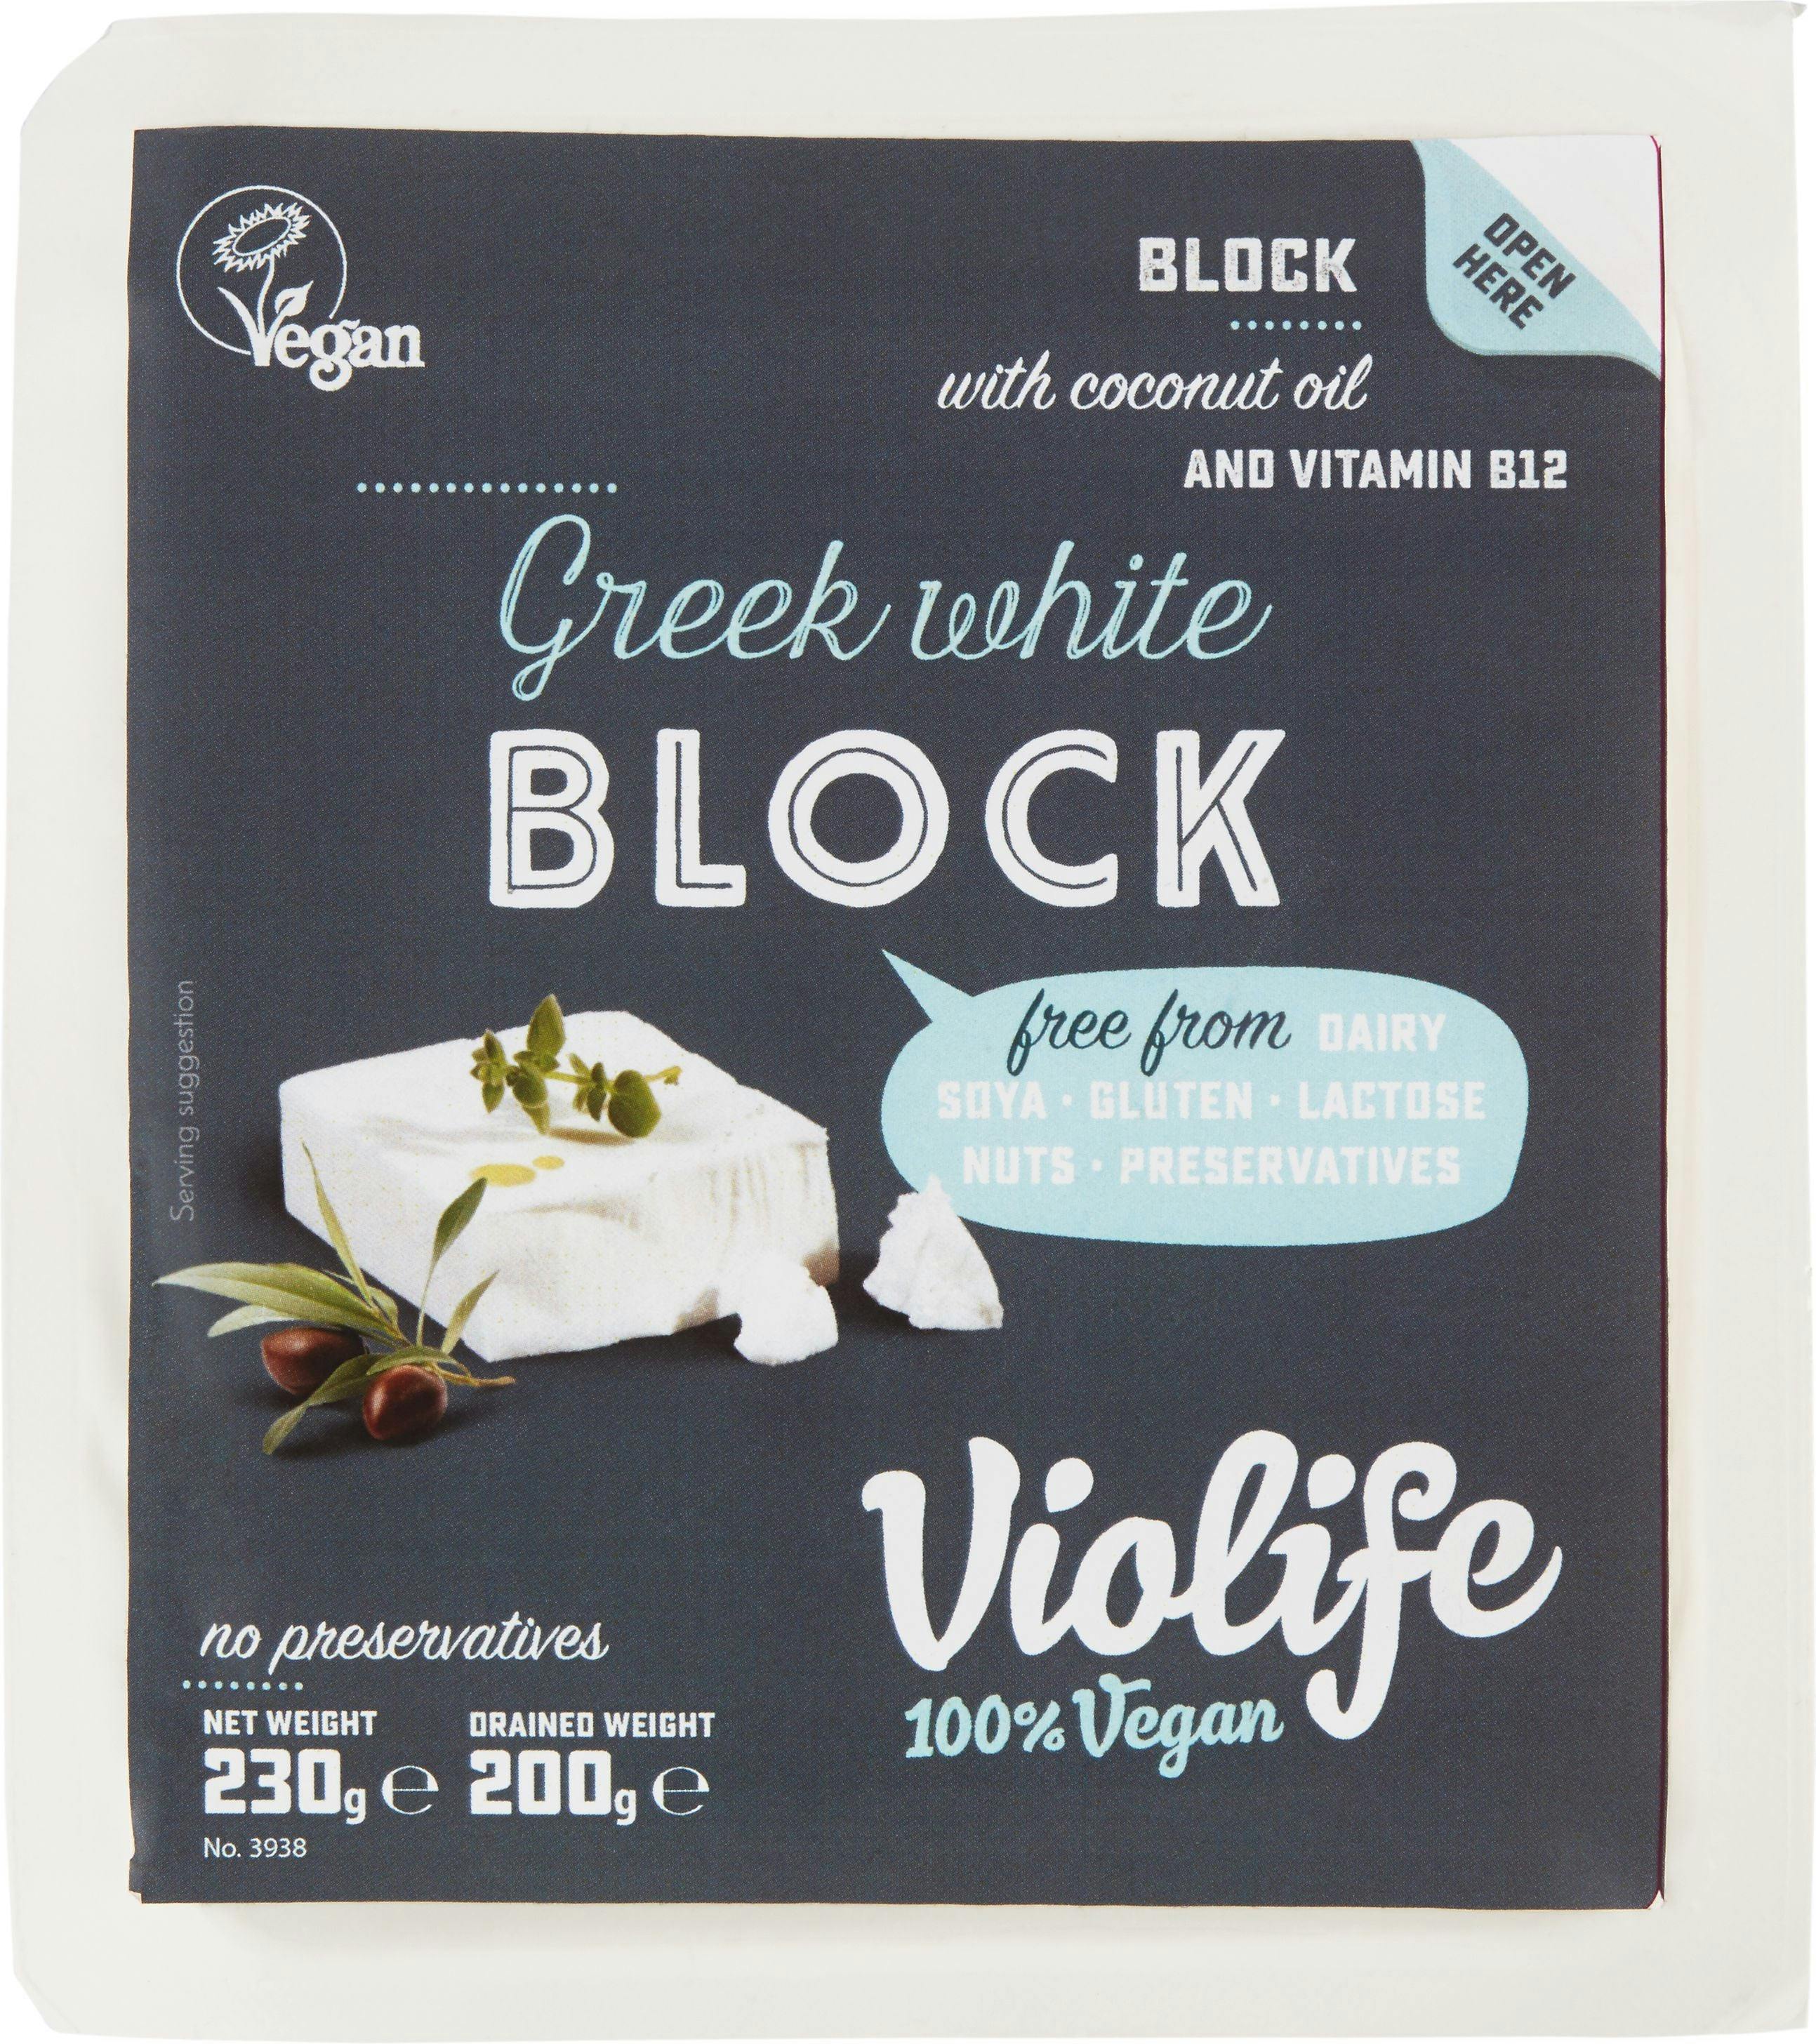 Violife Greek White Block